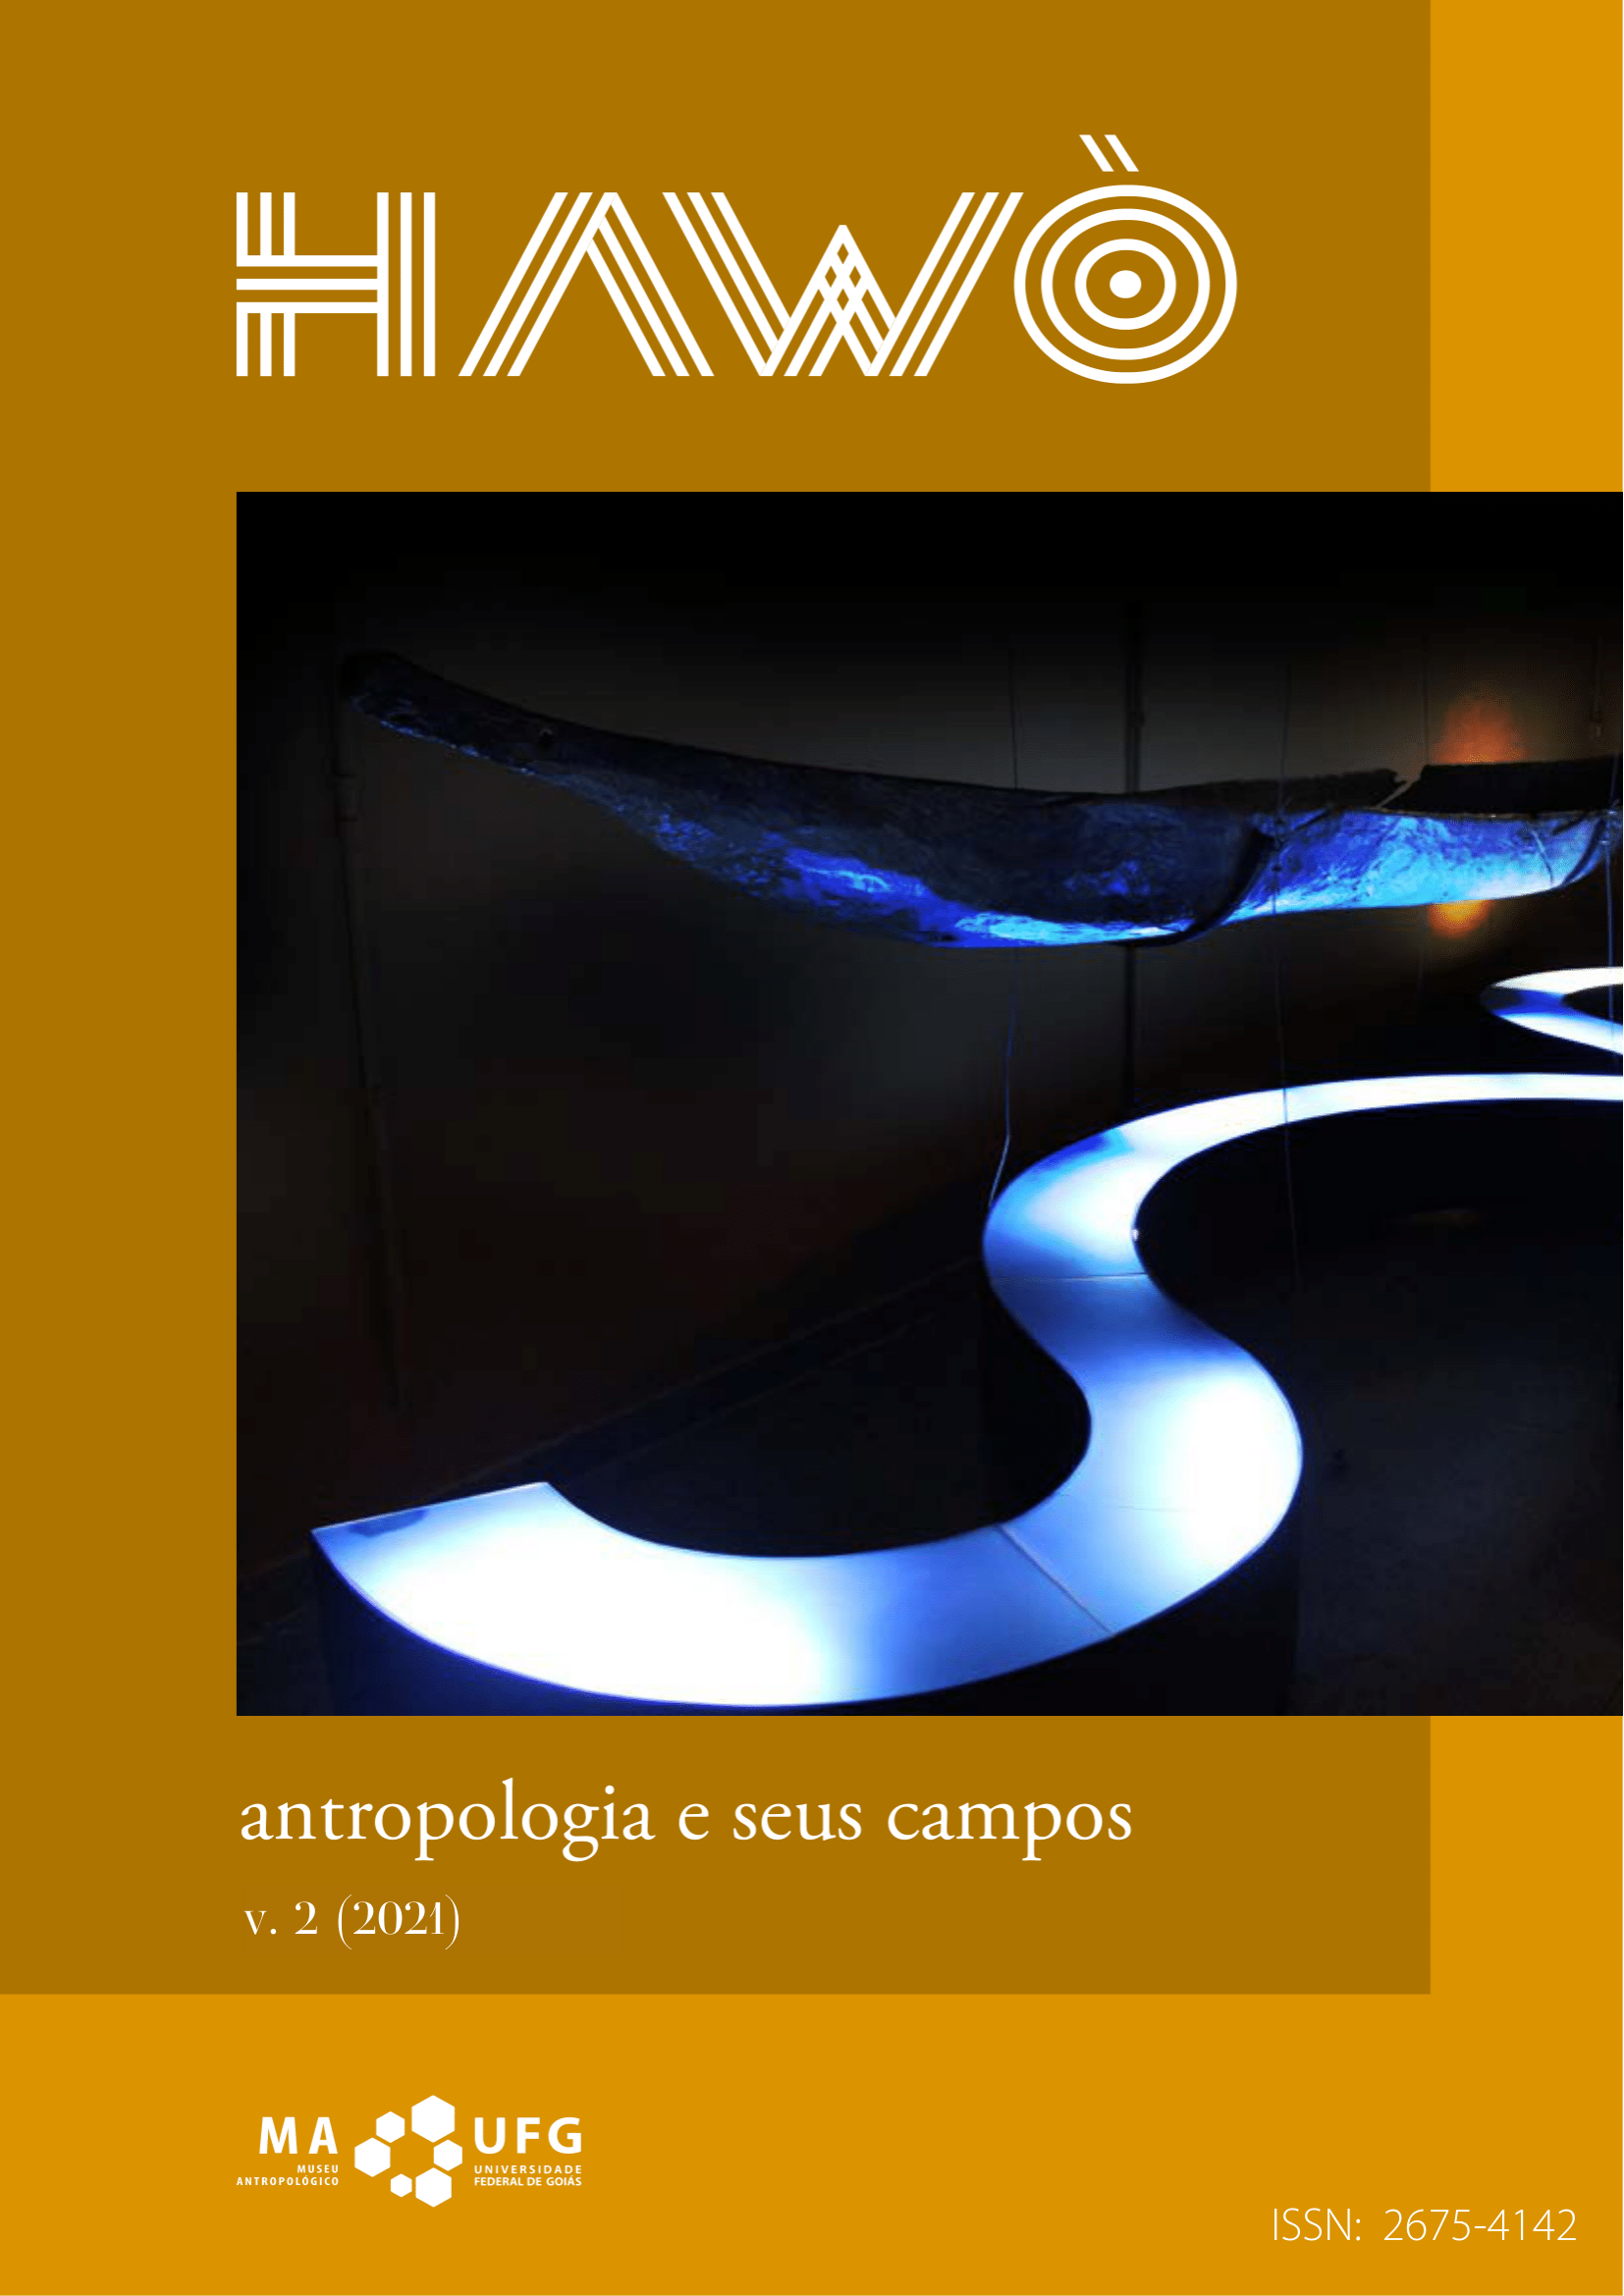 					Visualizar v. 2 (2021): Antropologia e seus campos
				